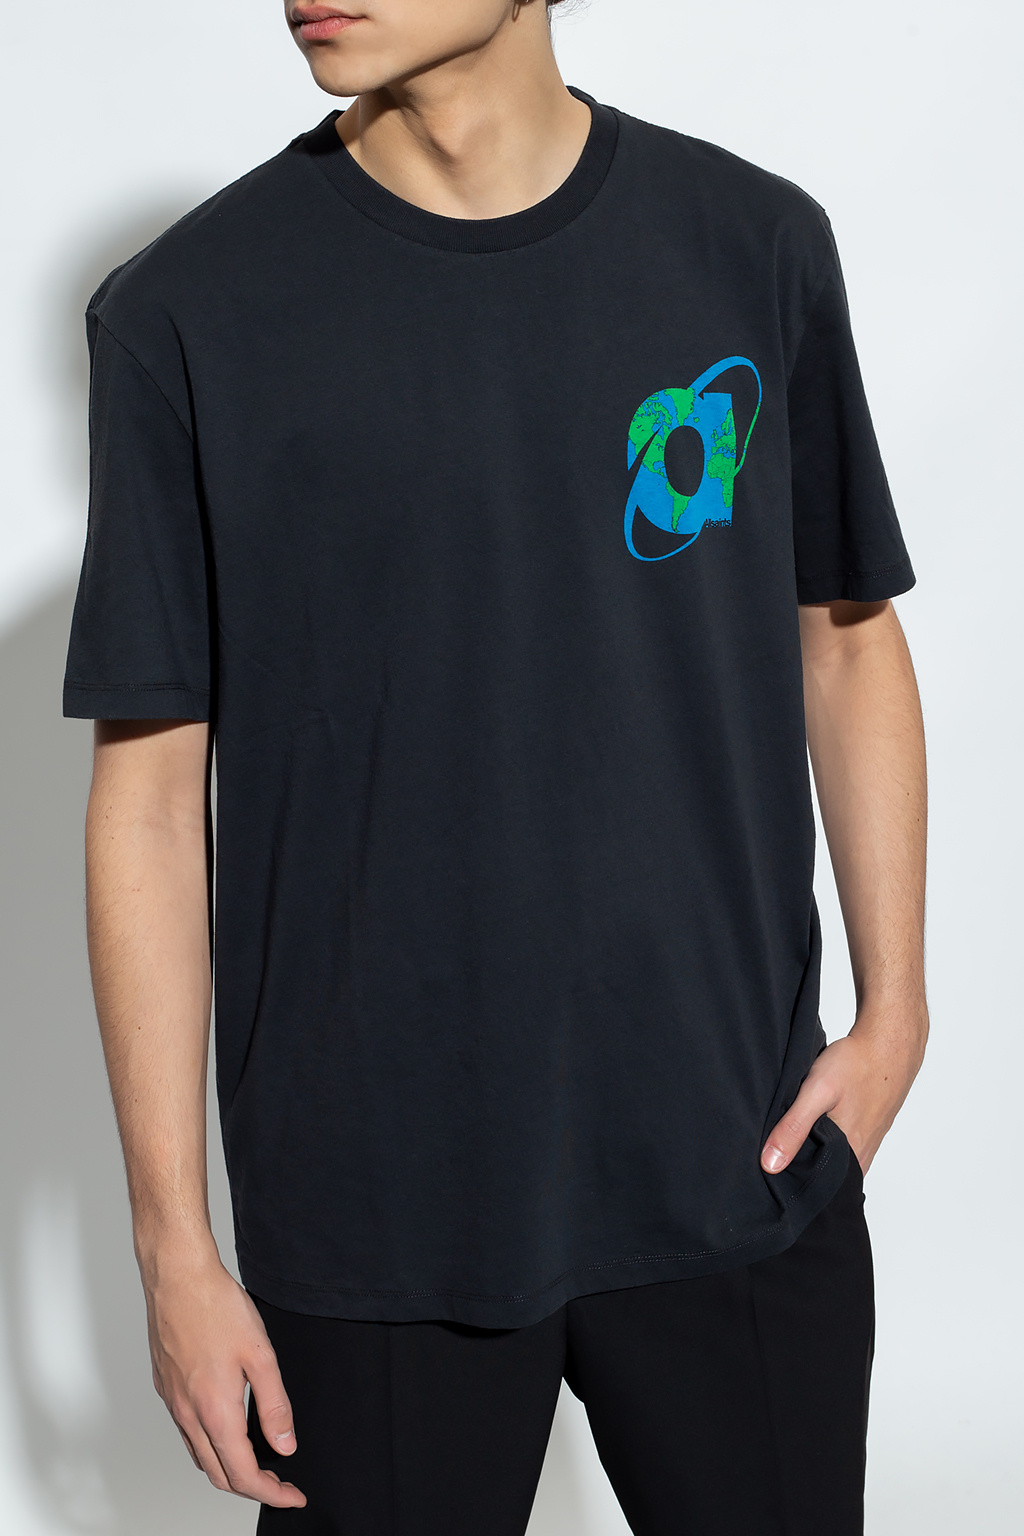 AllSaints ‘Voyager’ T-shirt